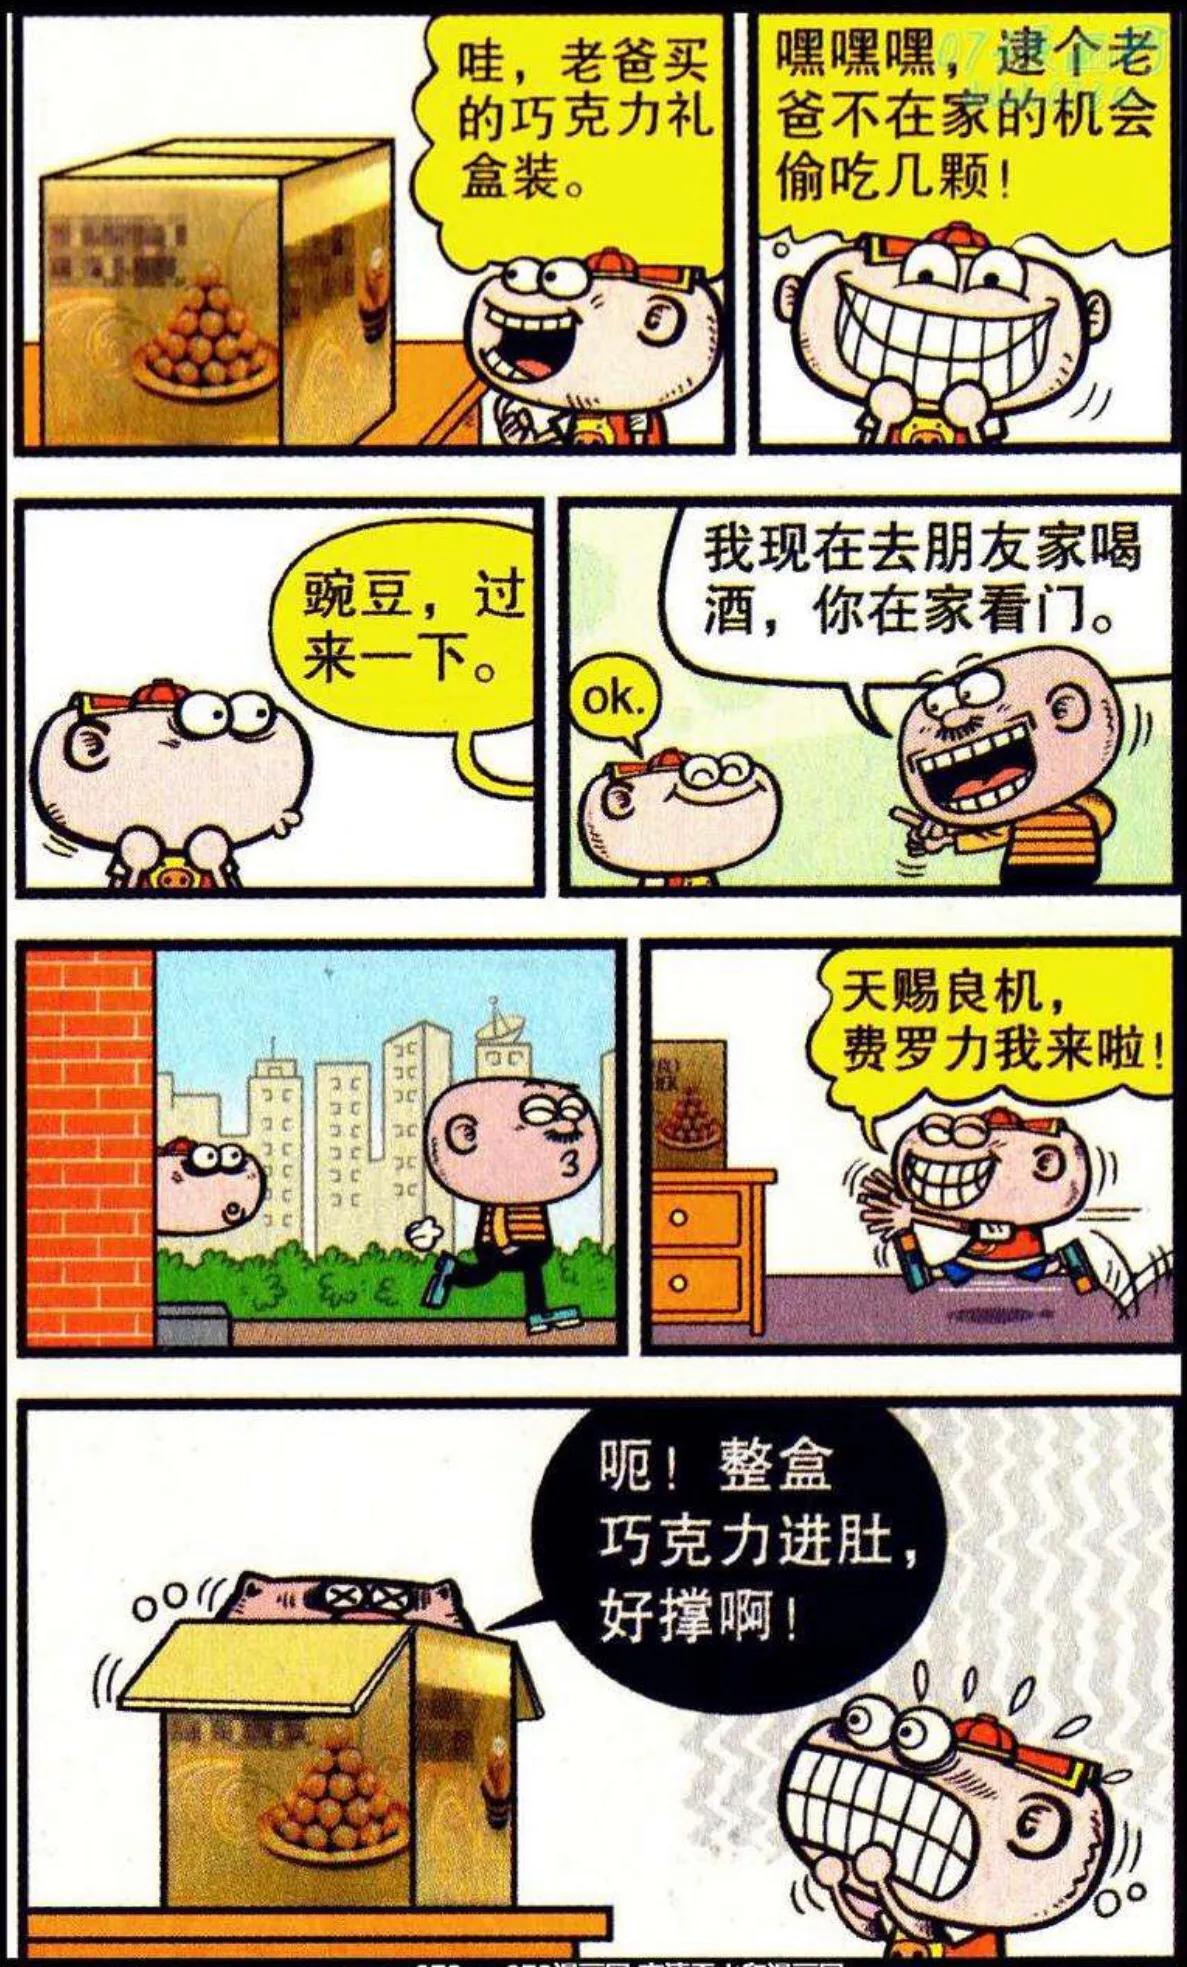 吐槽经典漫画《豌豆笑传》:莫名其妙,这几个故事的笑点在哪?